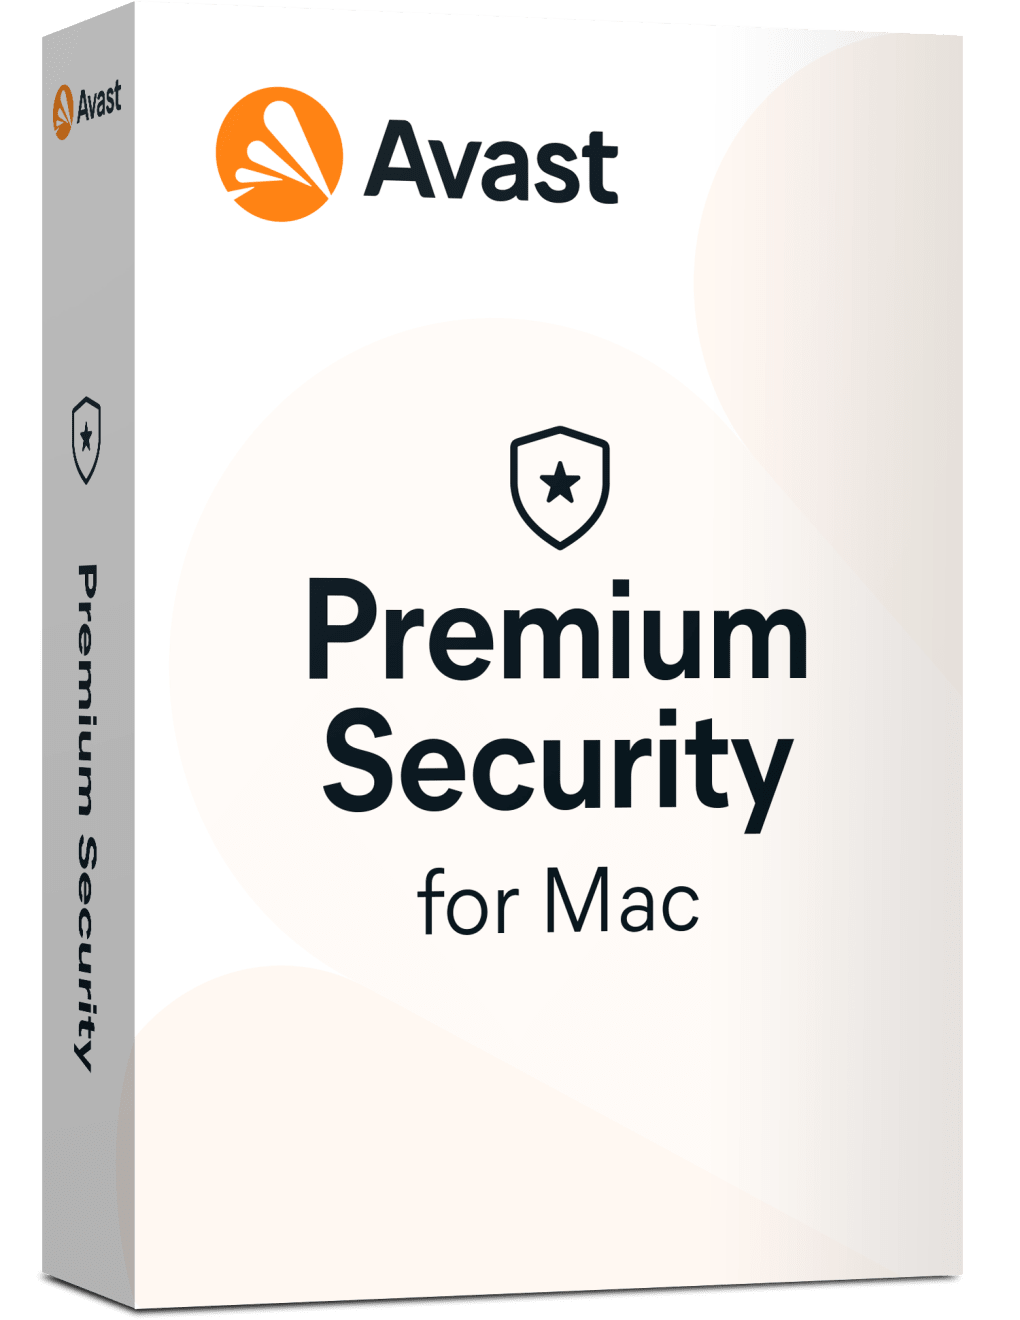 download avast premium security offline installer